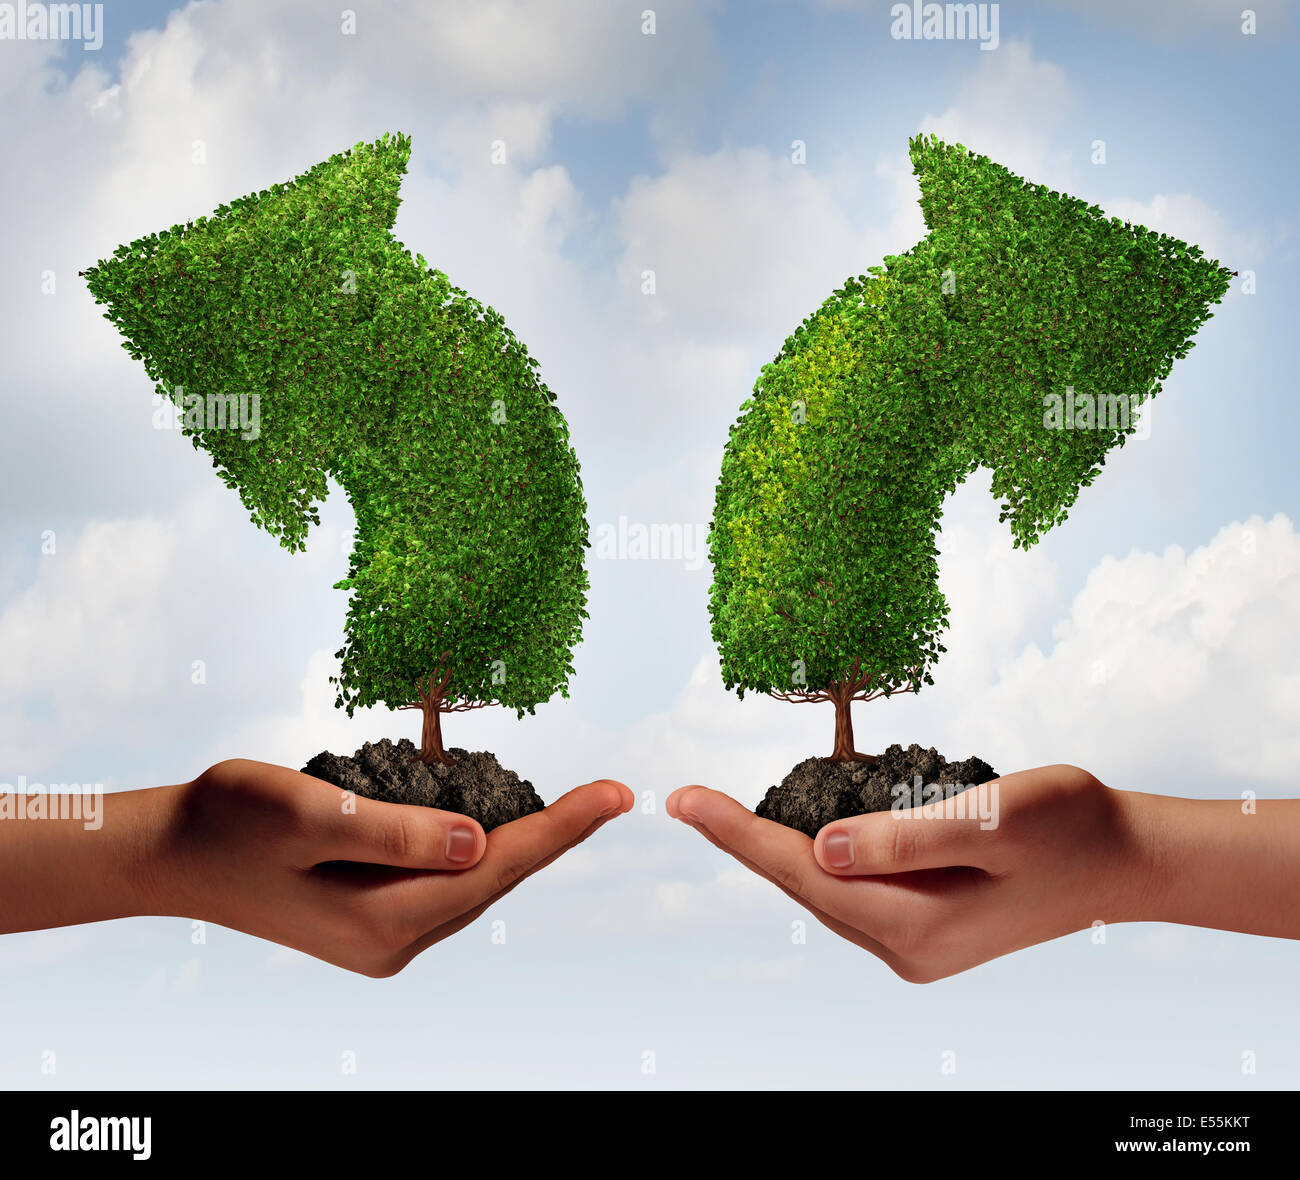 Wachstum-Wahl und Business Beratung Konzept als zwei menschliche Hände hochhalten Bäume geformt wie ein Pfeil in entgegengesetzte Richtungen als Kreuzung Metapher für die Auswahl der richtigen Option für Beruf oder finanziellen Erfolg wächst. Stockfoto